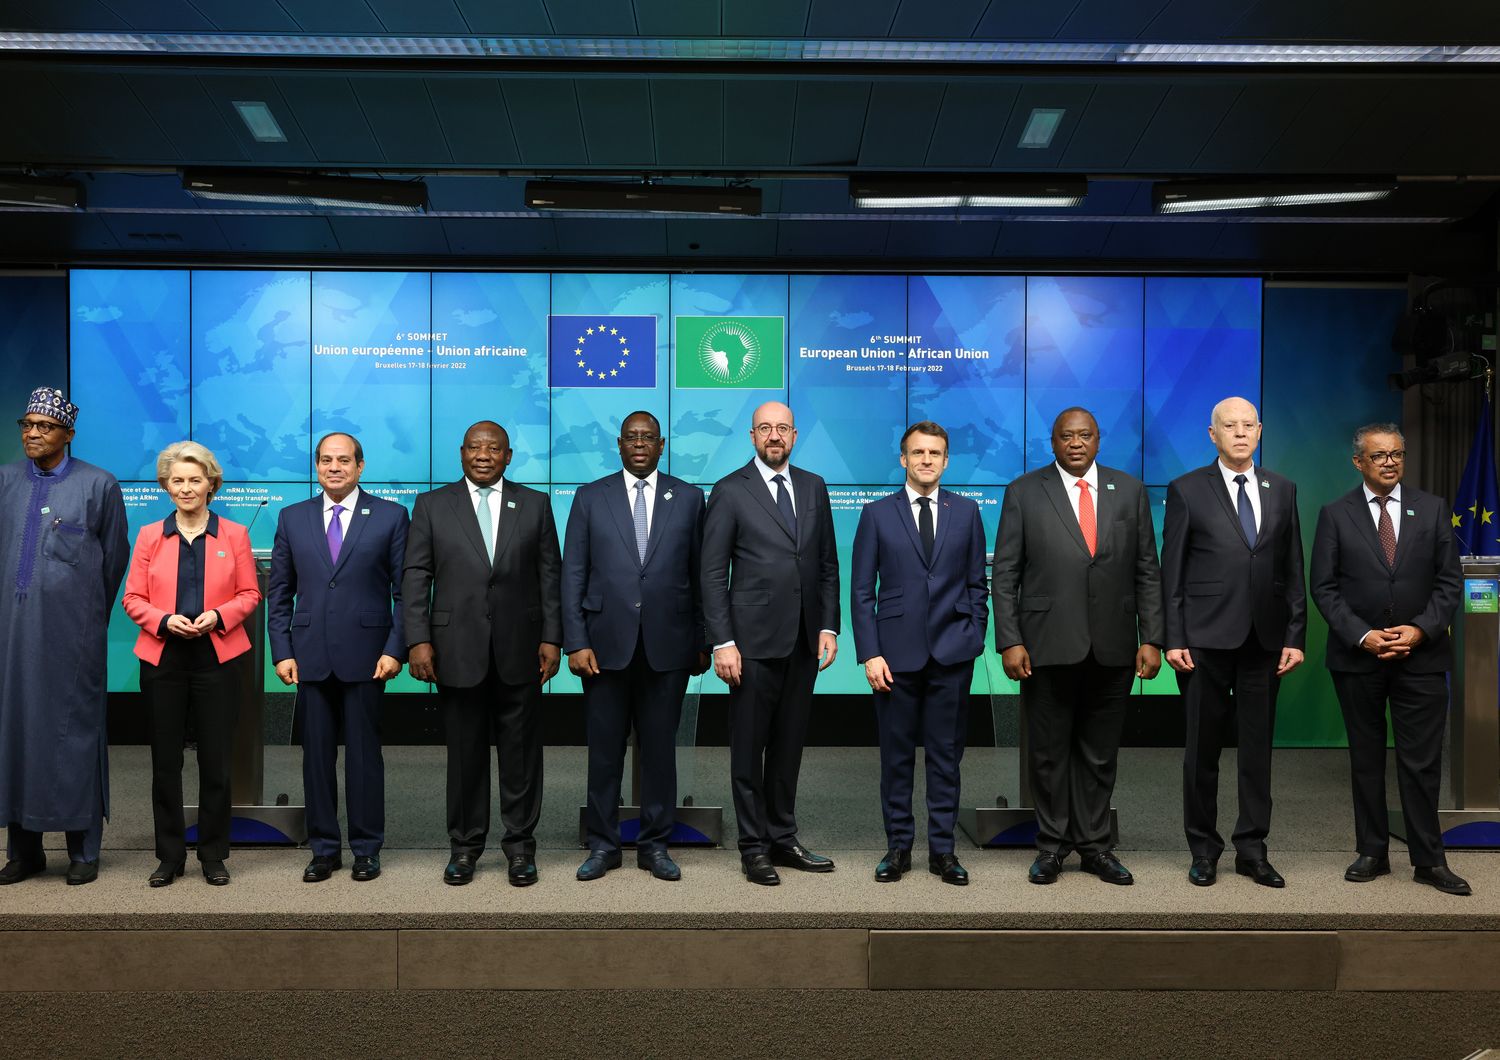 Presentazione iniziativa condivisione tecnologia mRna al Summit Ue-Unione africana